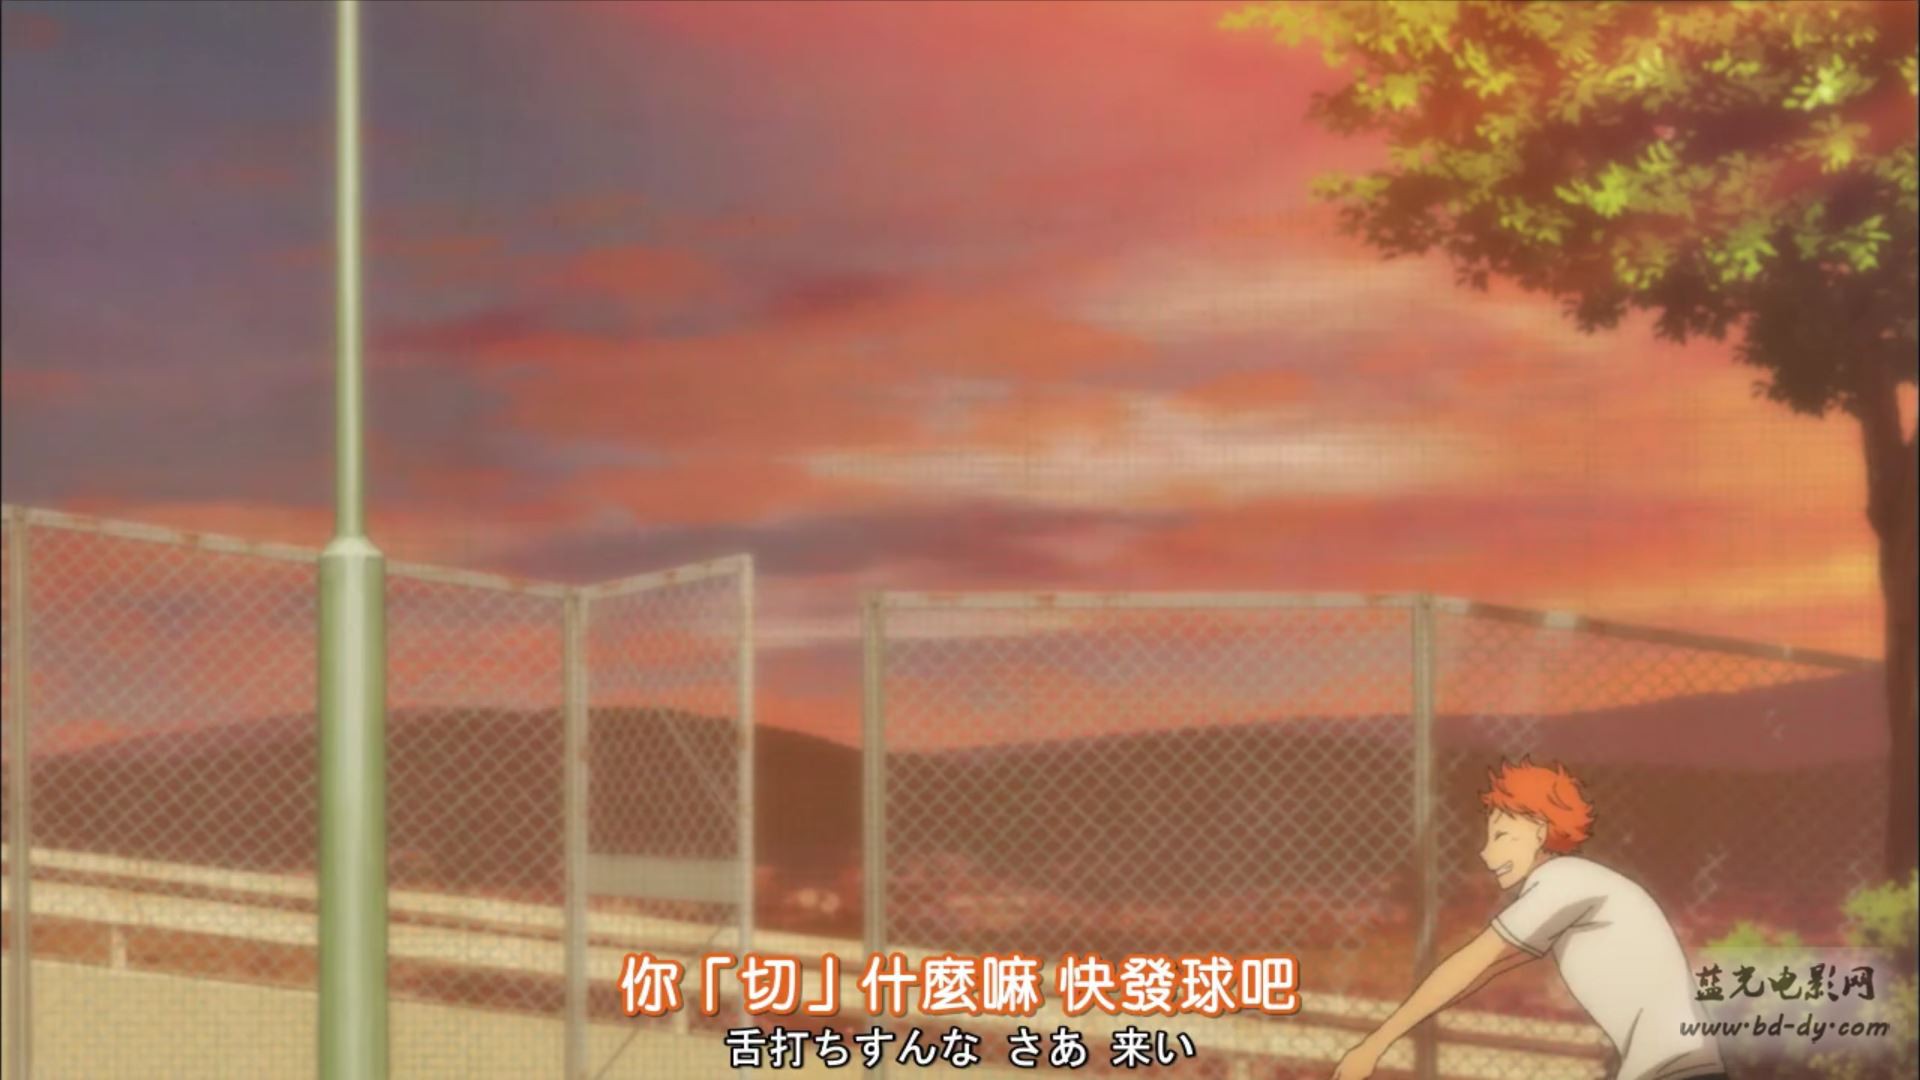 《排球少年 第二季》25集全.2015日本动画.HD720P.日语中字截图;jsessionid=57suKgp7bHqfqNkcSn0F2lB7ln8hzcWf2knIJXJd